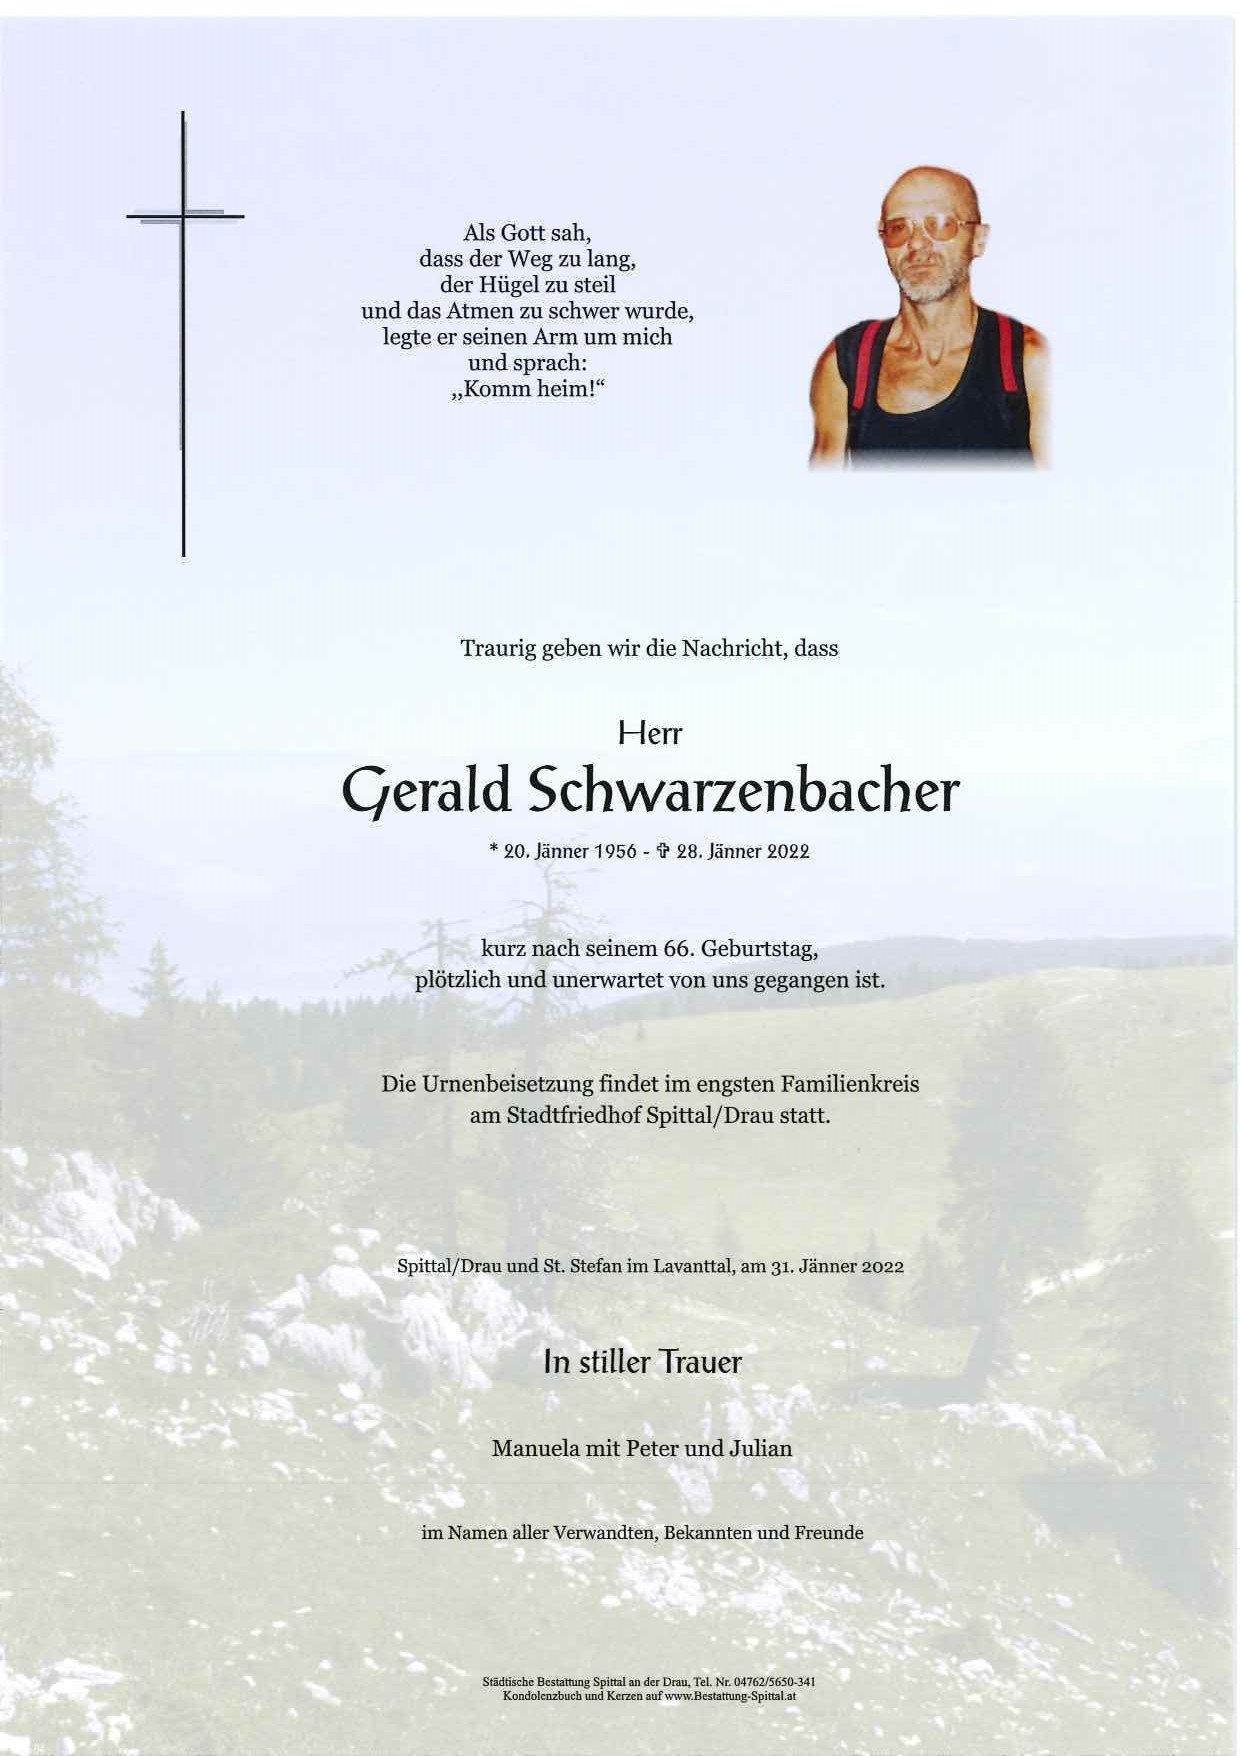 Gerald Schwarzenbacher